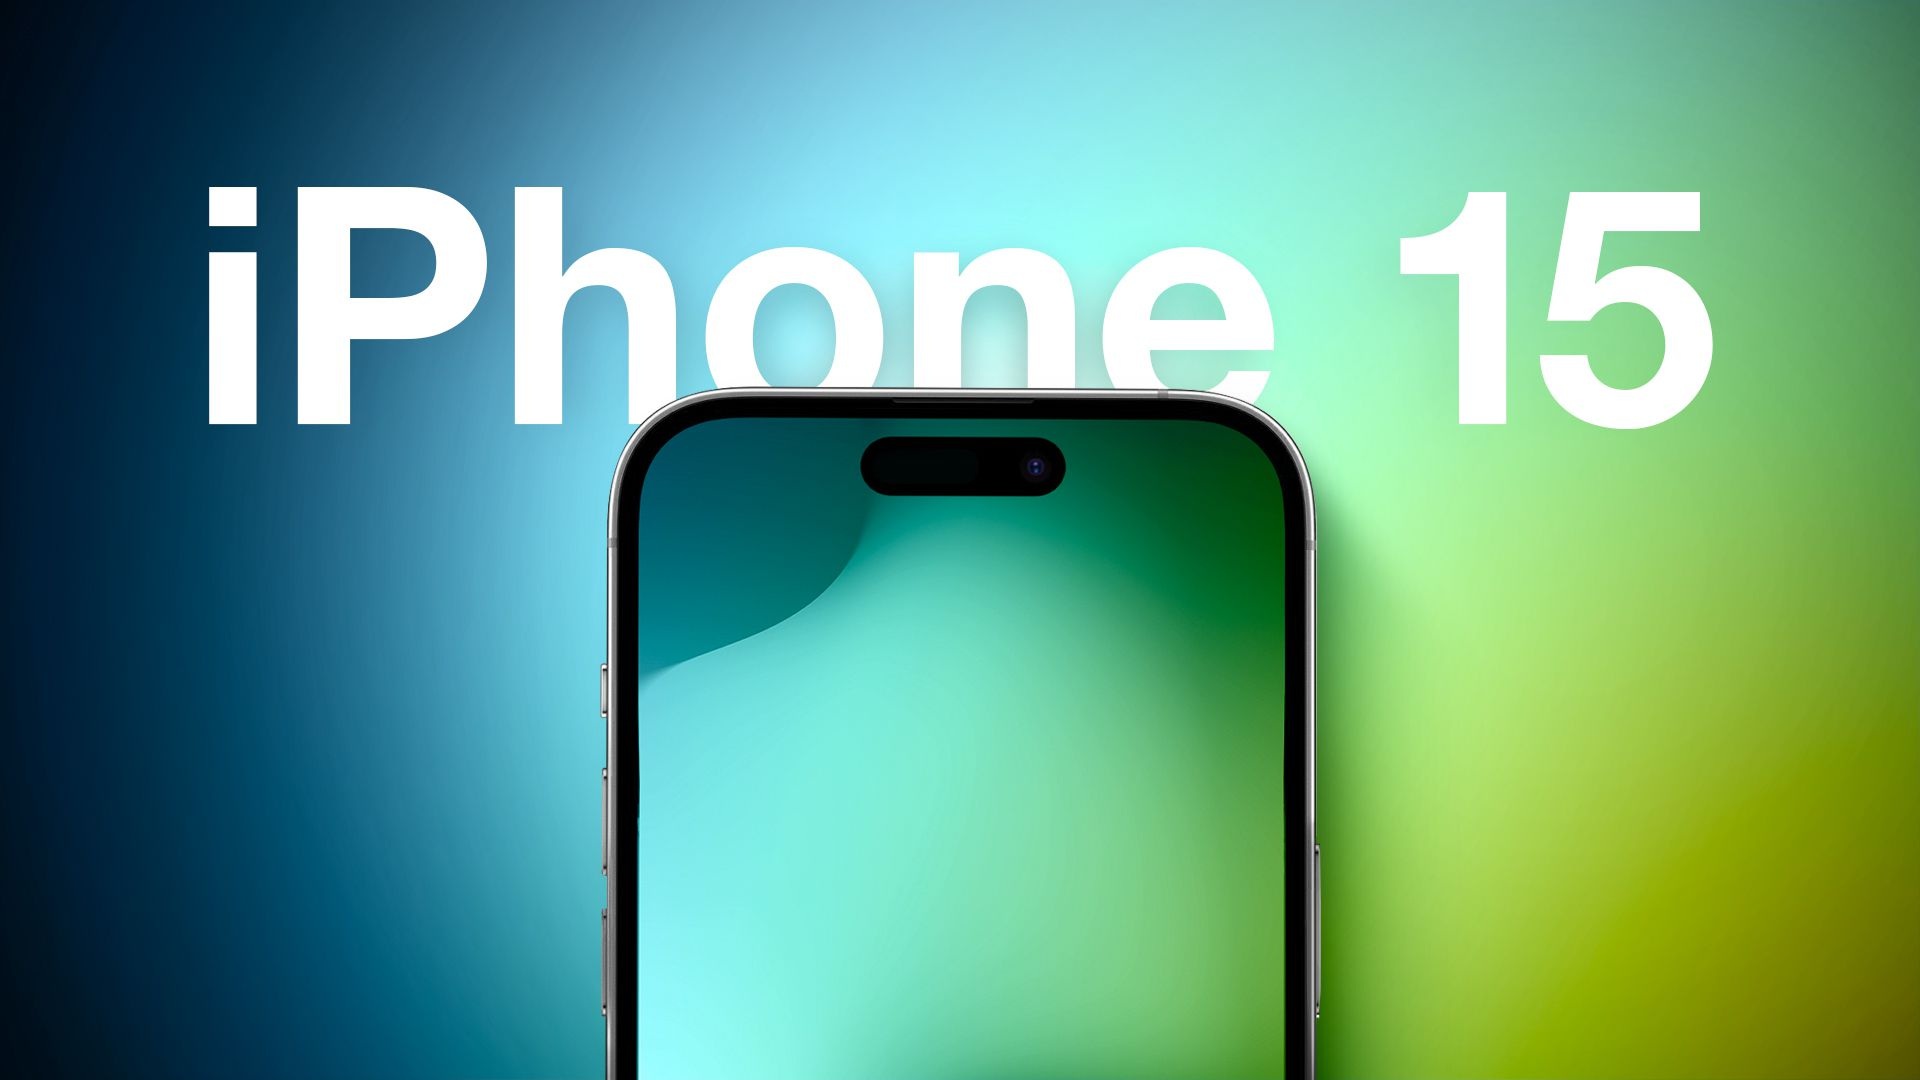 Giá iPhone 15 tại Việt Nam xếp thứ bao nhiêu thế giới?